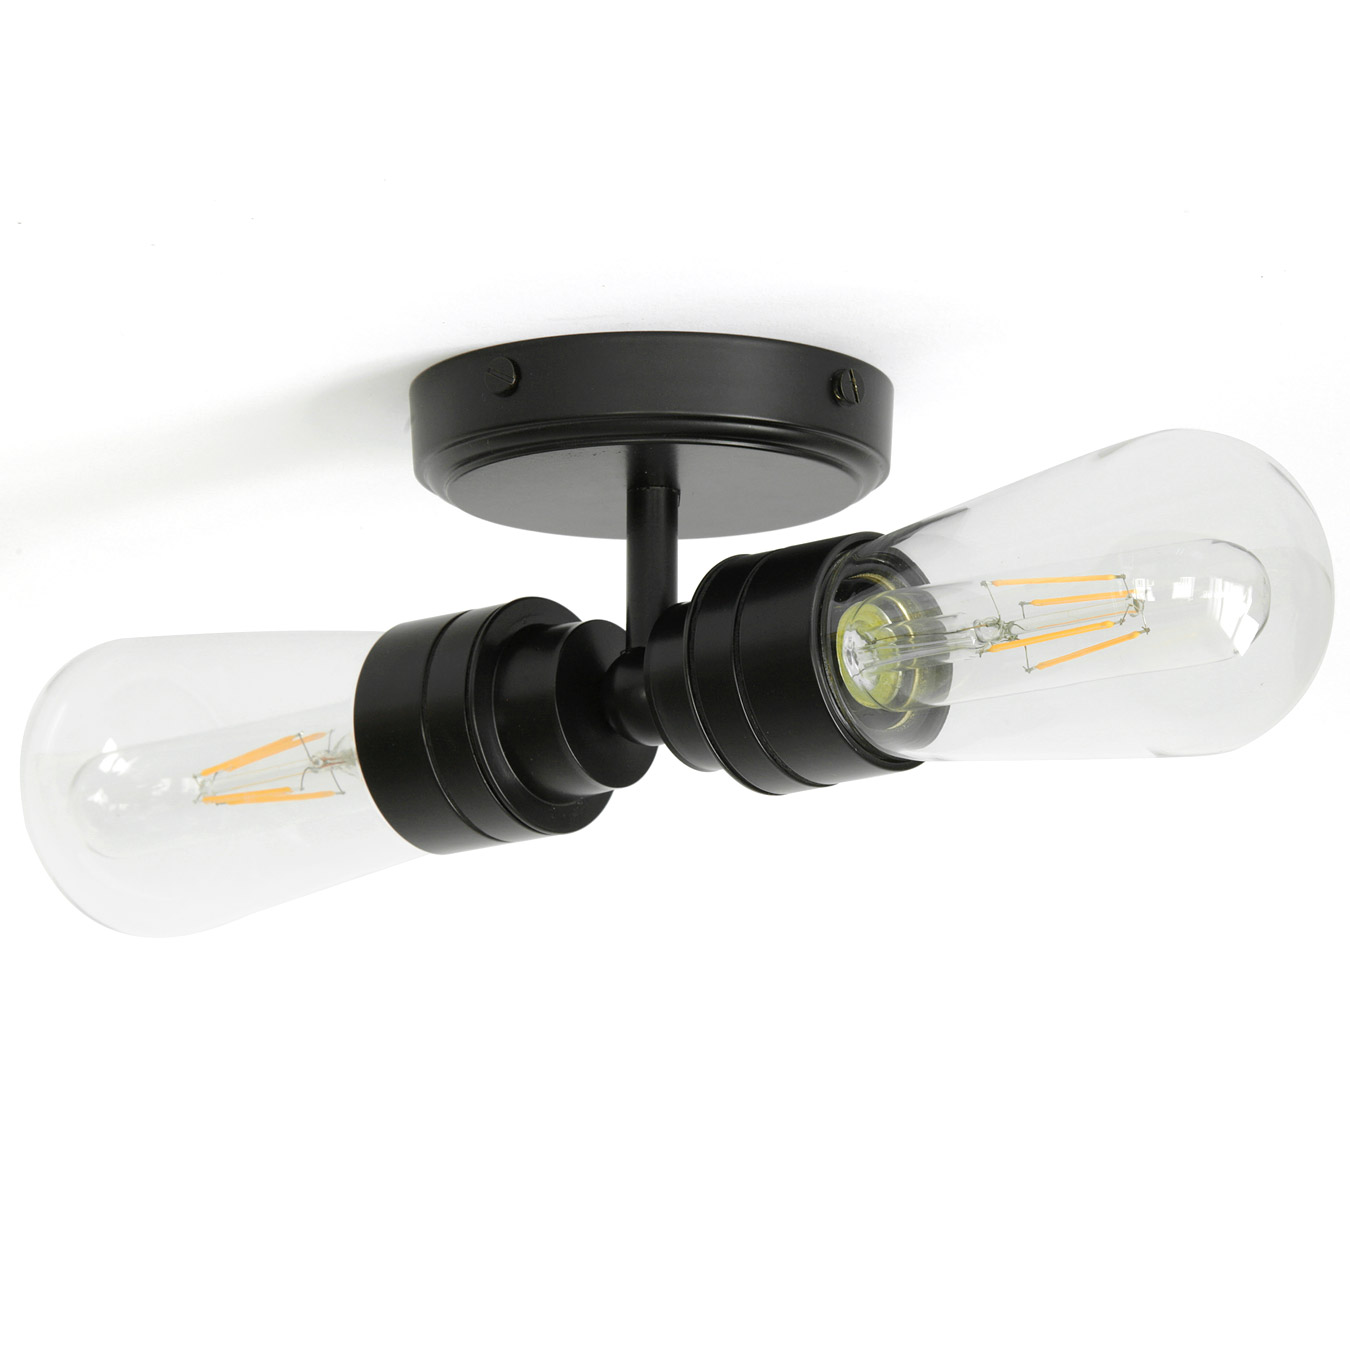 Doppel-Badezimmer-Lampe mit IP65-Glaskolben, Wand oder Decke: Doppel-Wandlampe mit Glaskolben, schwarz, als Deckenleuchte oder Wandleuchte einsetzbar